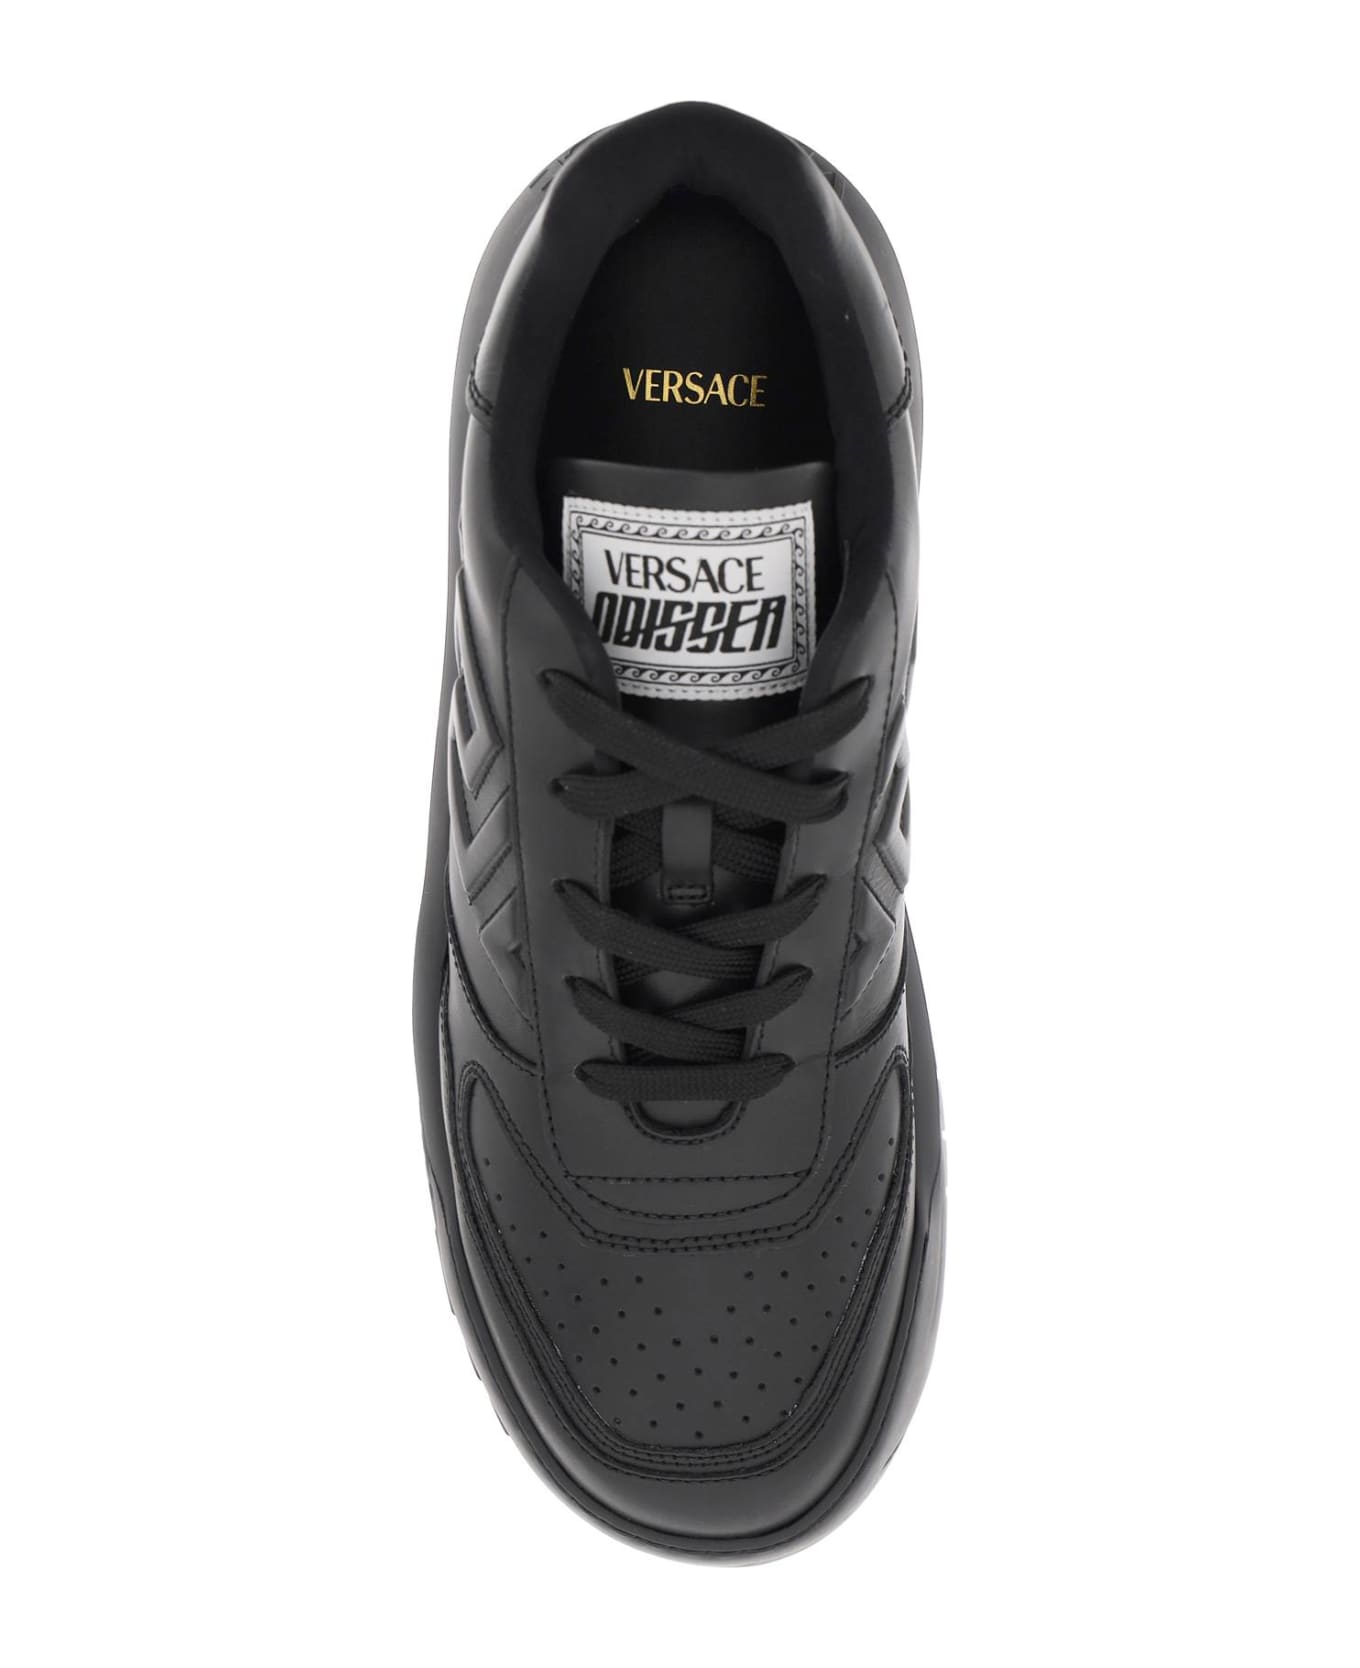 Versace 'odissea Greca' Sneakers - Black スニーカー